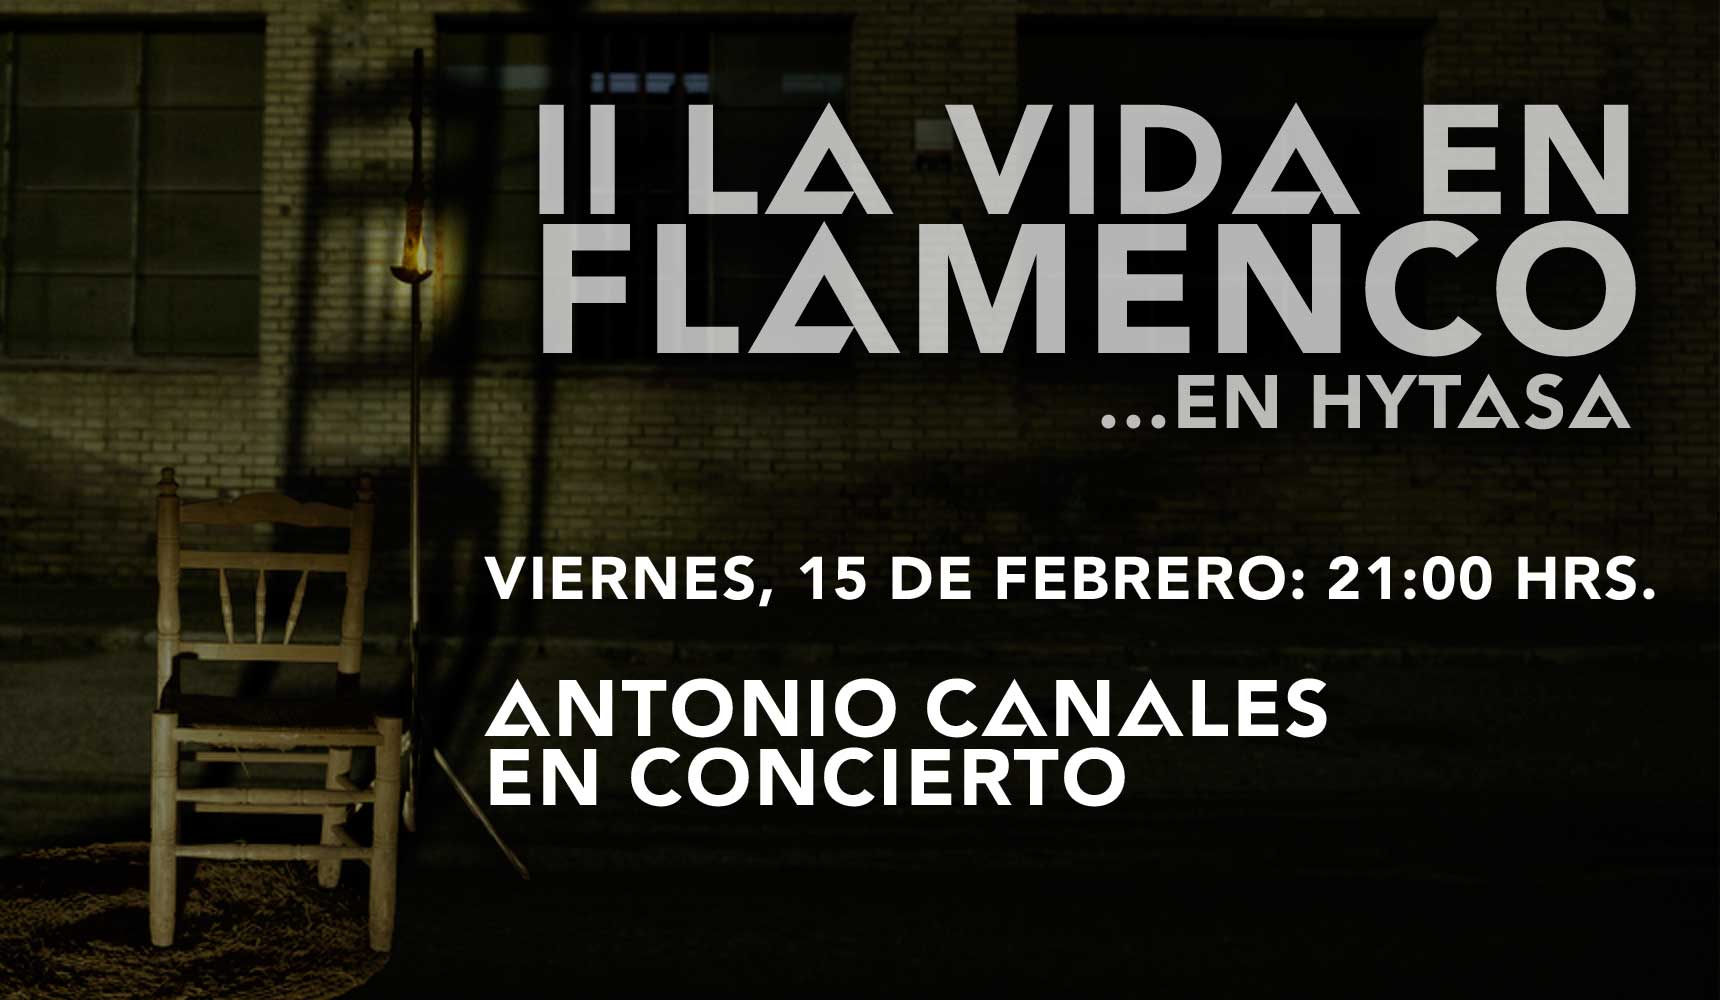 La Vida en Flamenco con Antonio Canales